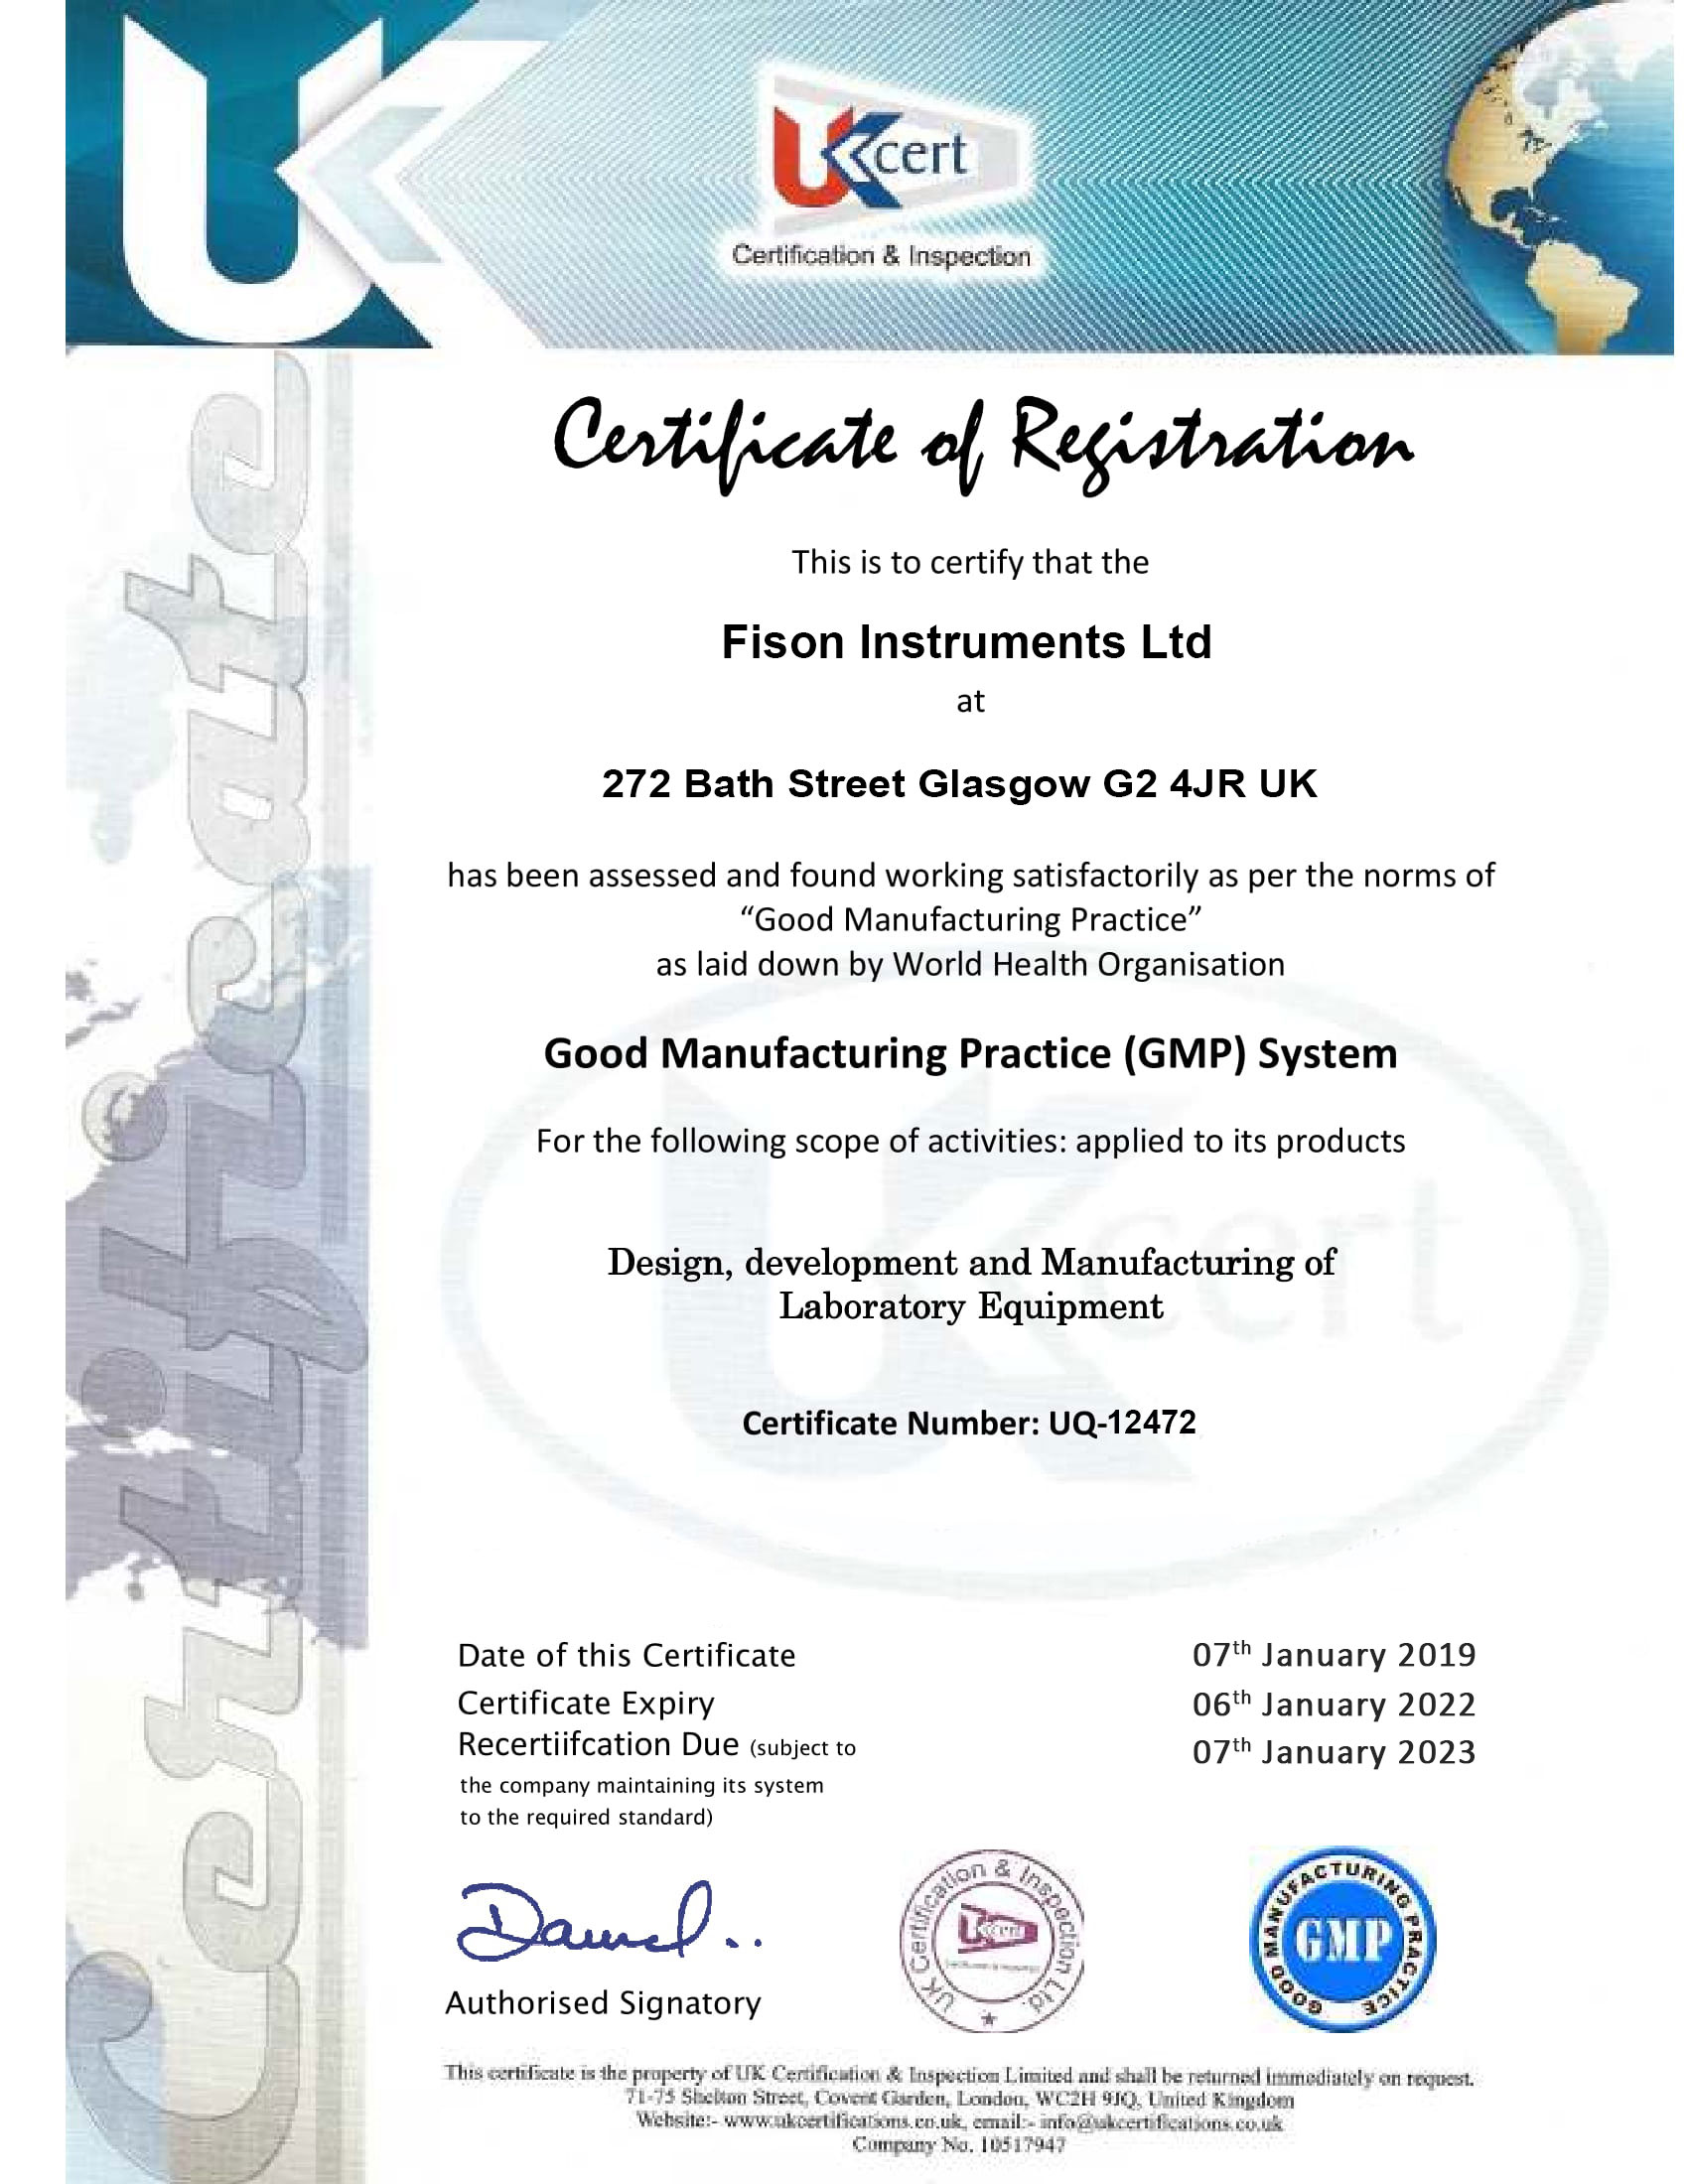 Fison Instruments Ltd GMP-UQ-12472